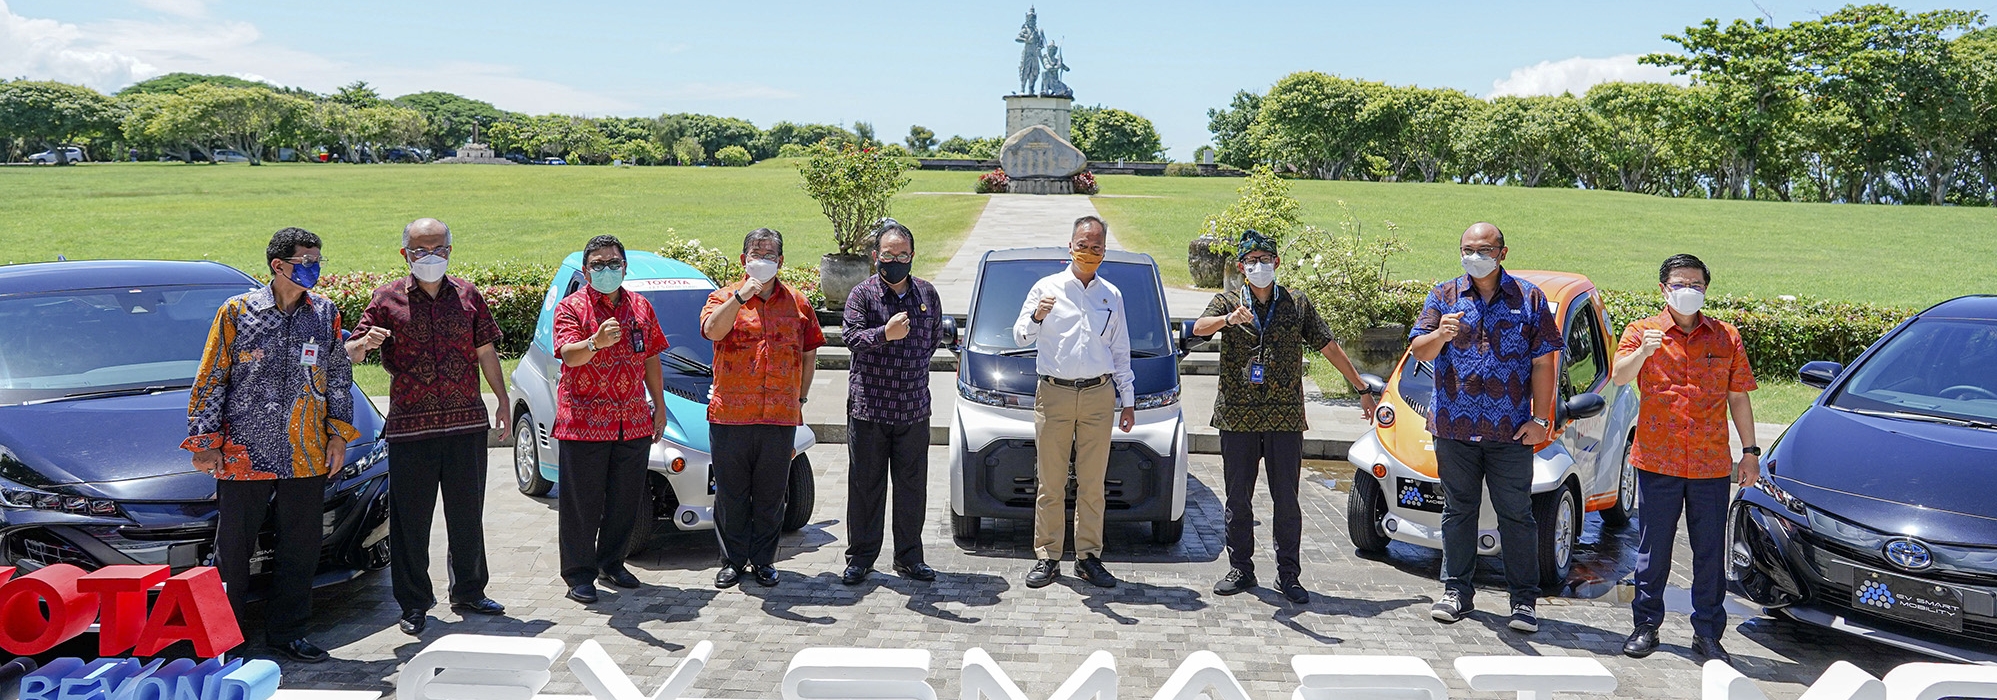 50 Tahun Toyota di Indonesia: Sebagai Wujud Komitmen Mobility Happiness For All,  Toyota Hadirkan EV Smart Mobility Untuk Mendukung Pemanfaatan Teknologi Elektrifikasi Dan Pemulihan Wisata di Bali